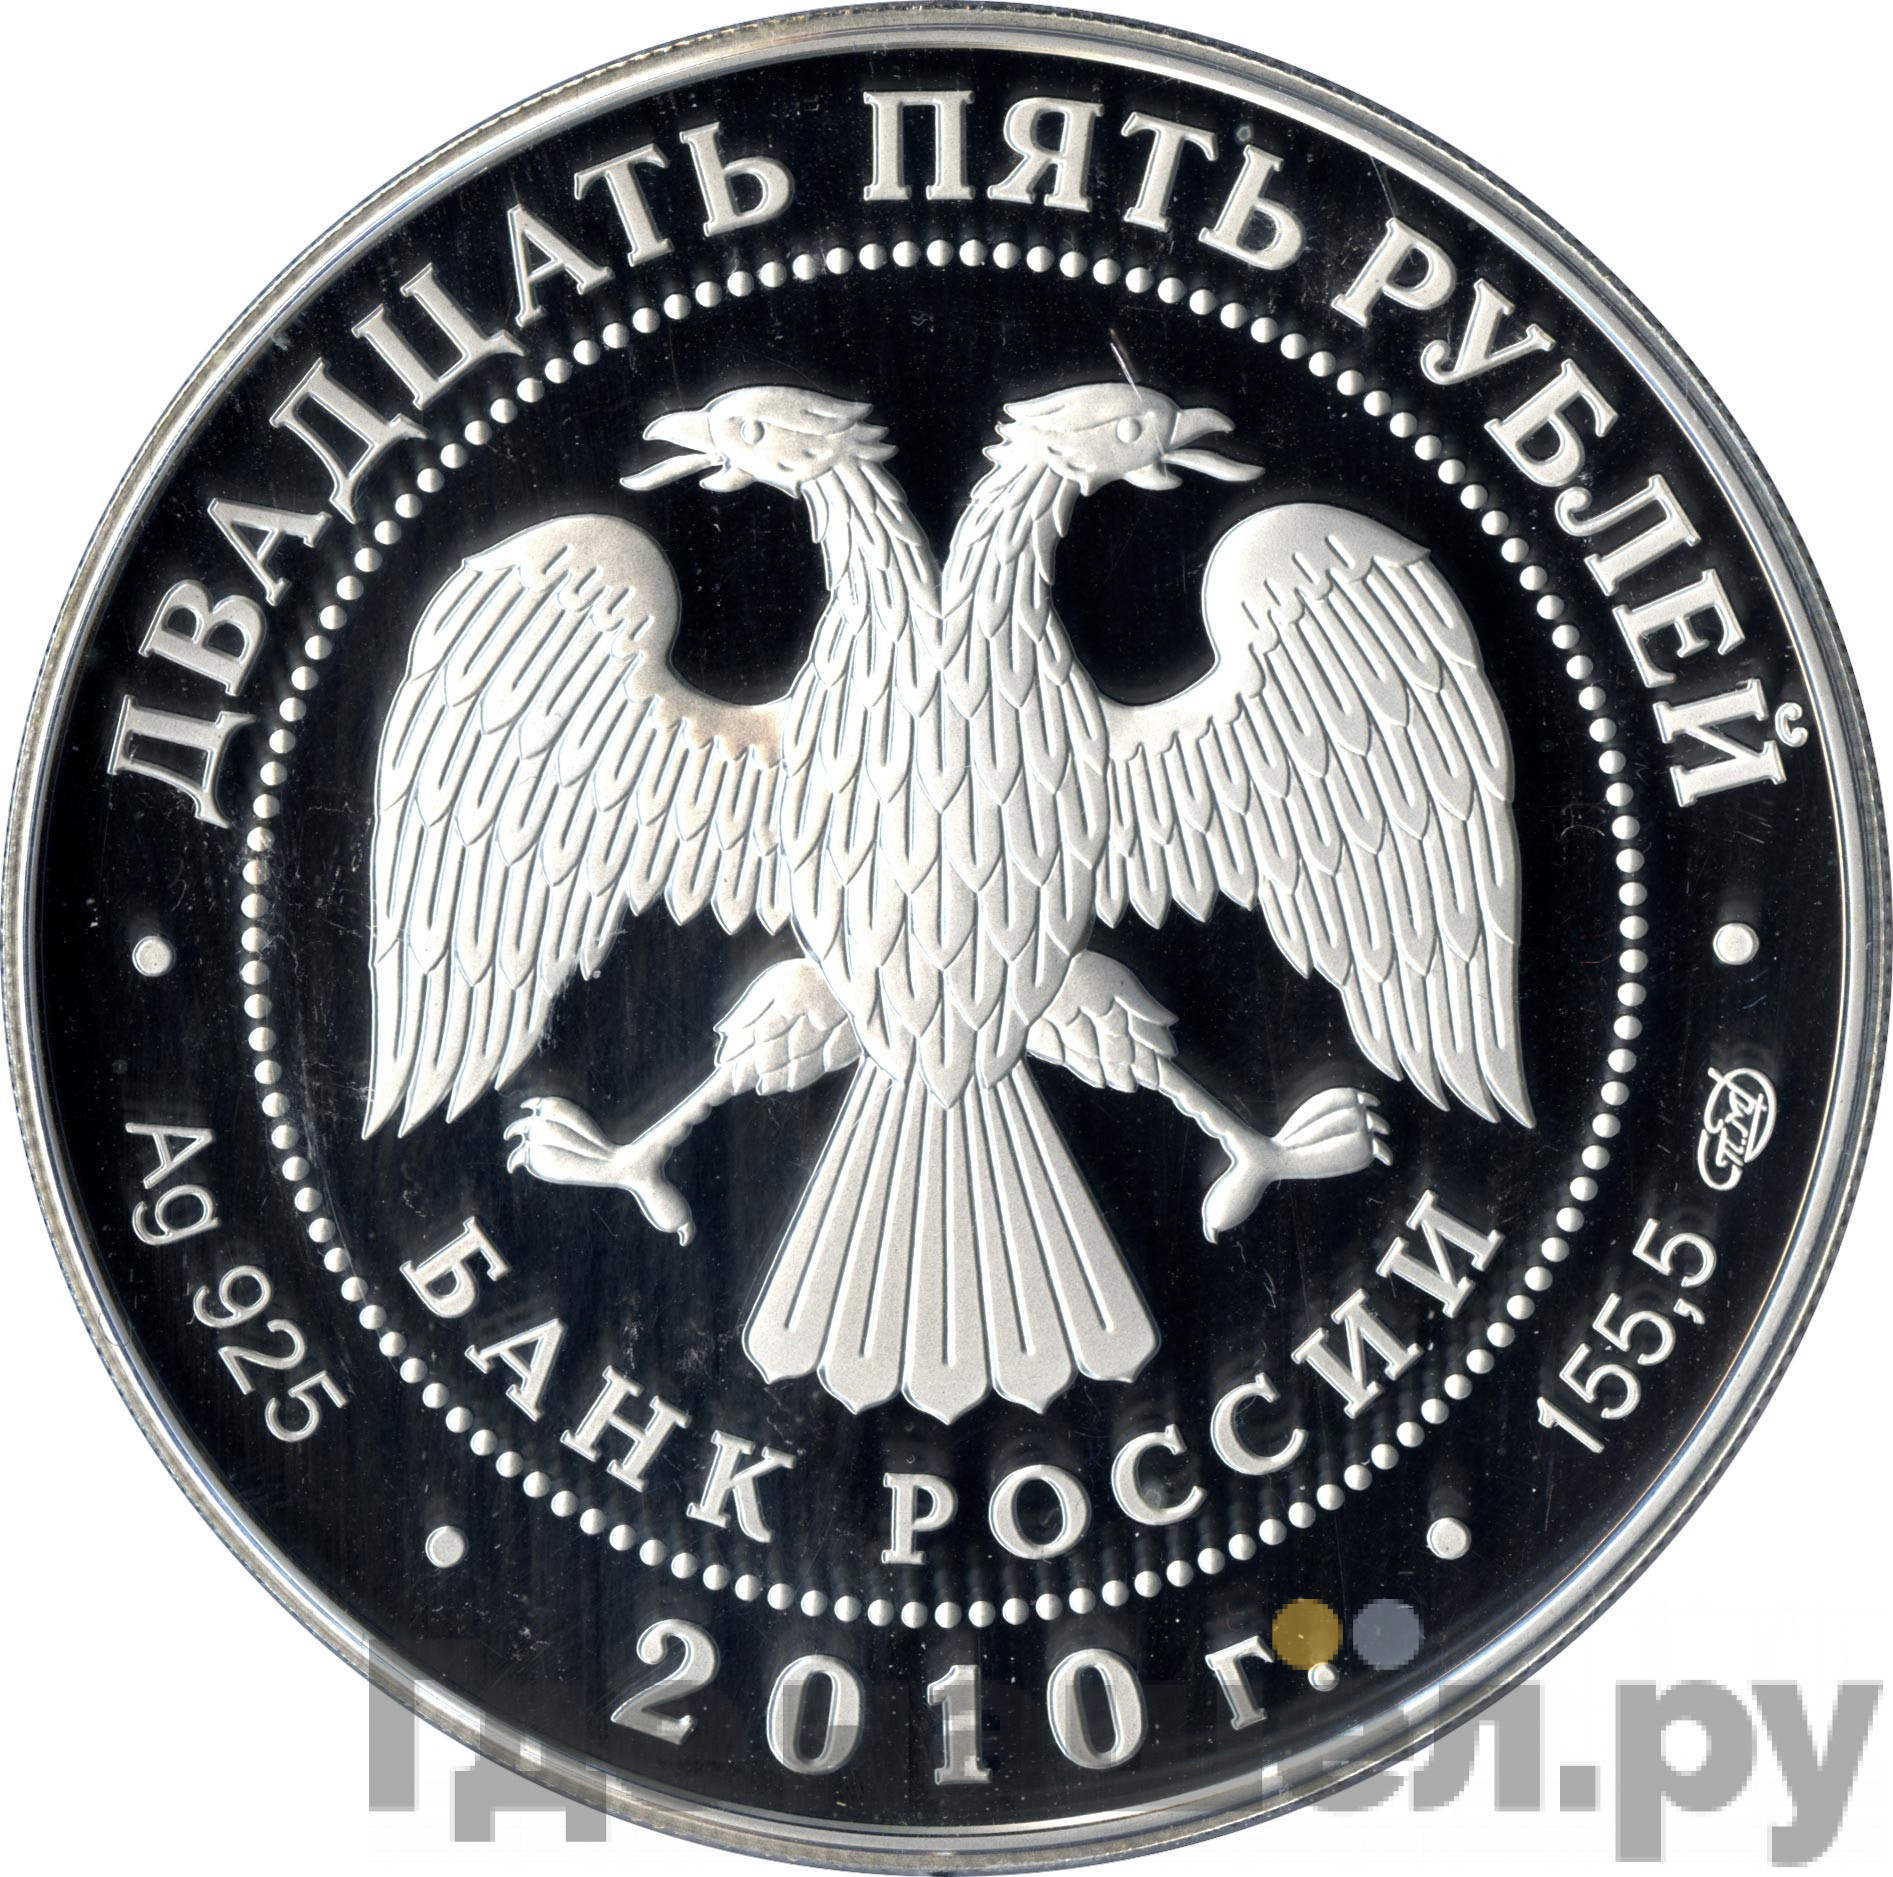 25 рублей 2010 года СПМД Ростральные колонны 1810 200 лет